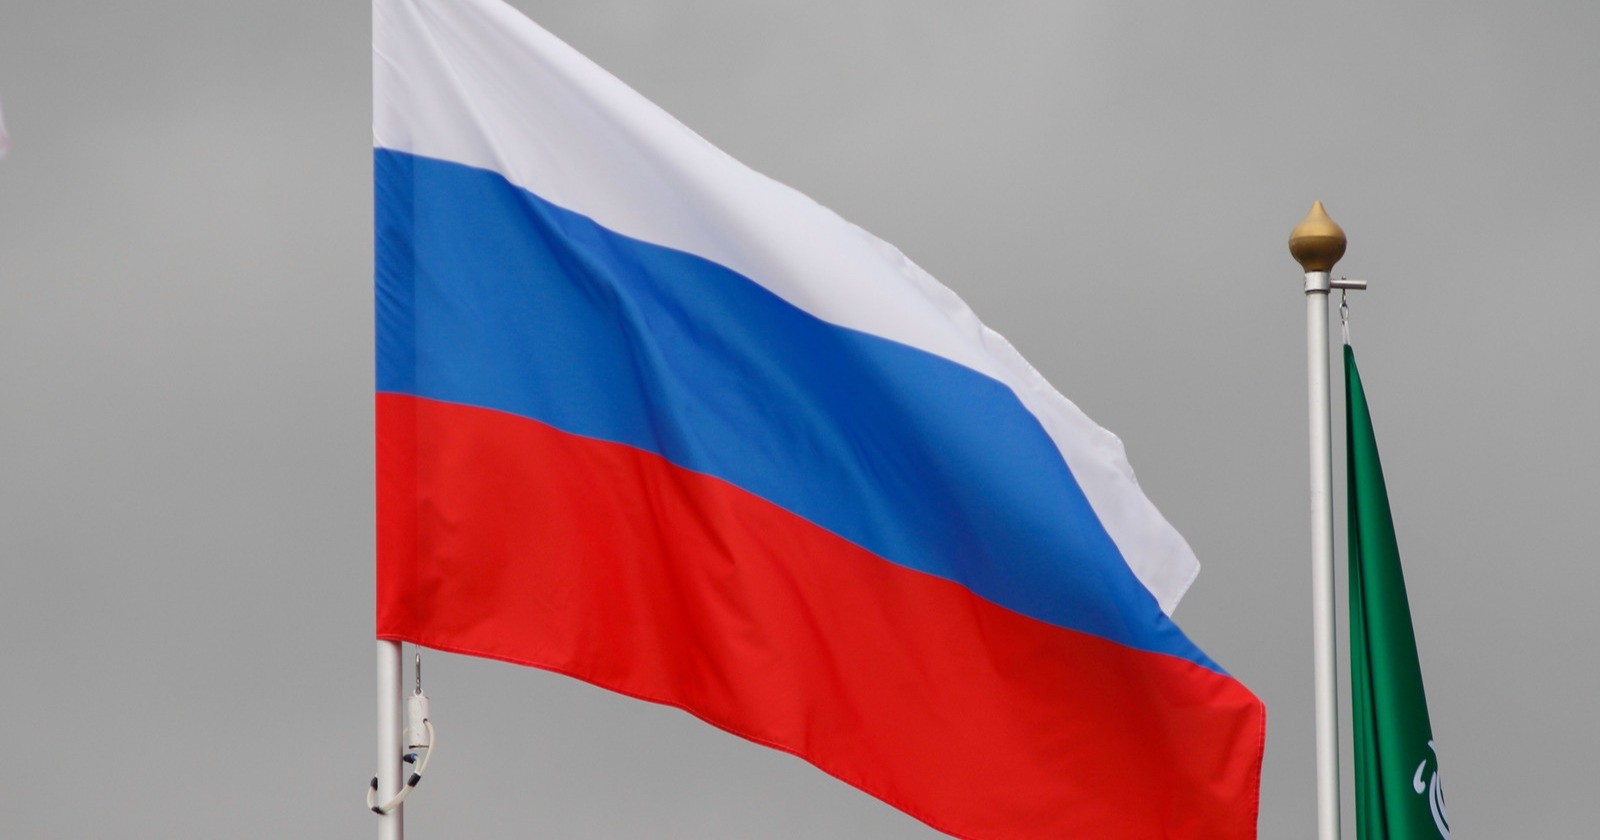 Нумеролог об экономике страны: «К 2025 году Россия станет великой, а пока доказывает свою силу»